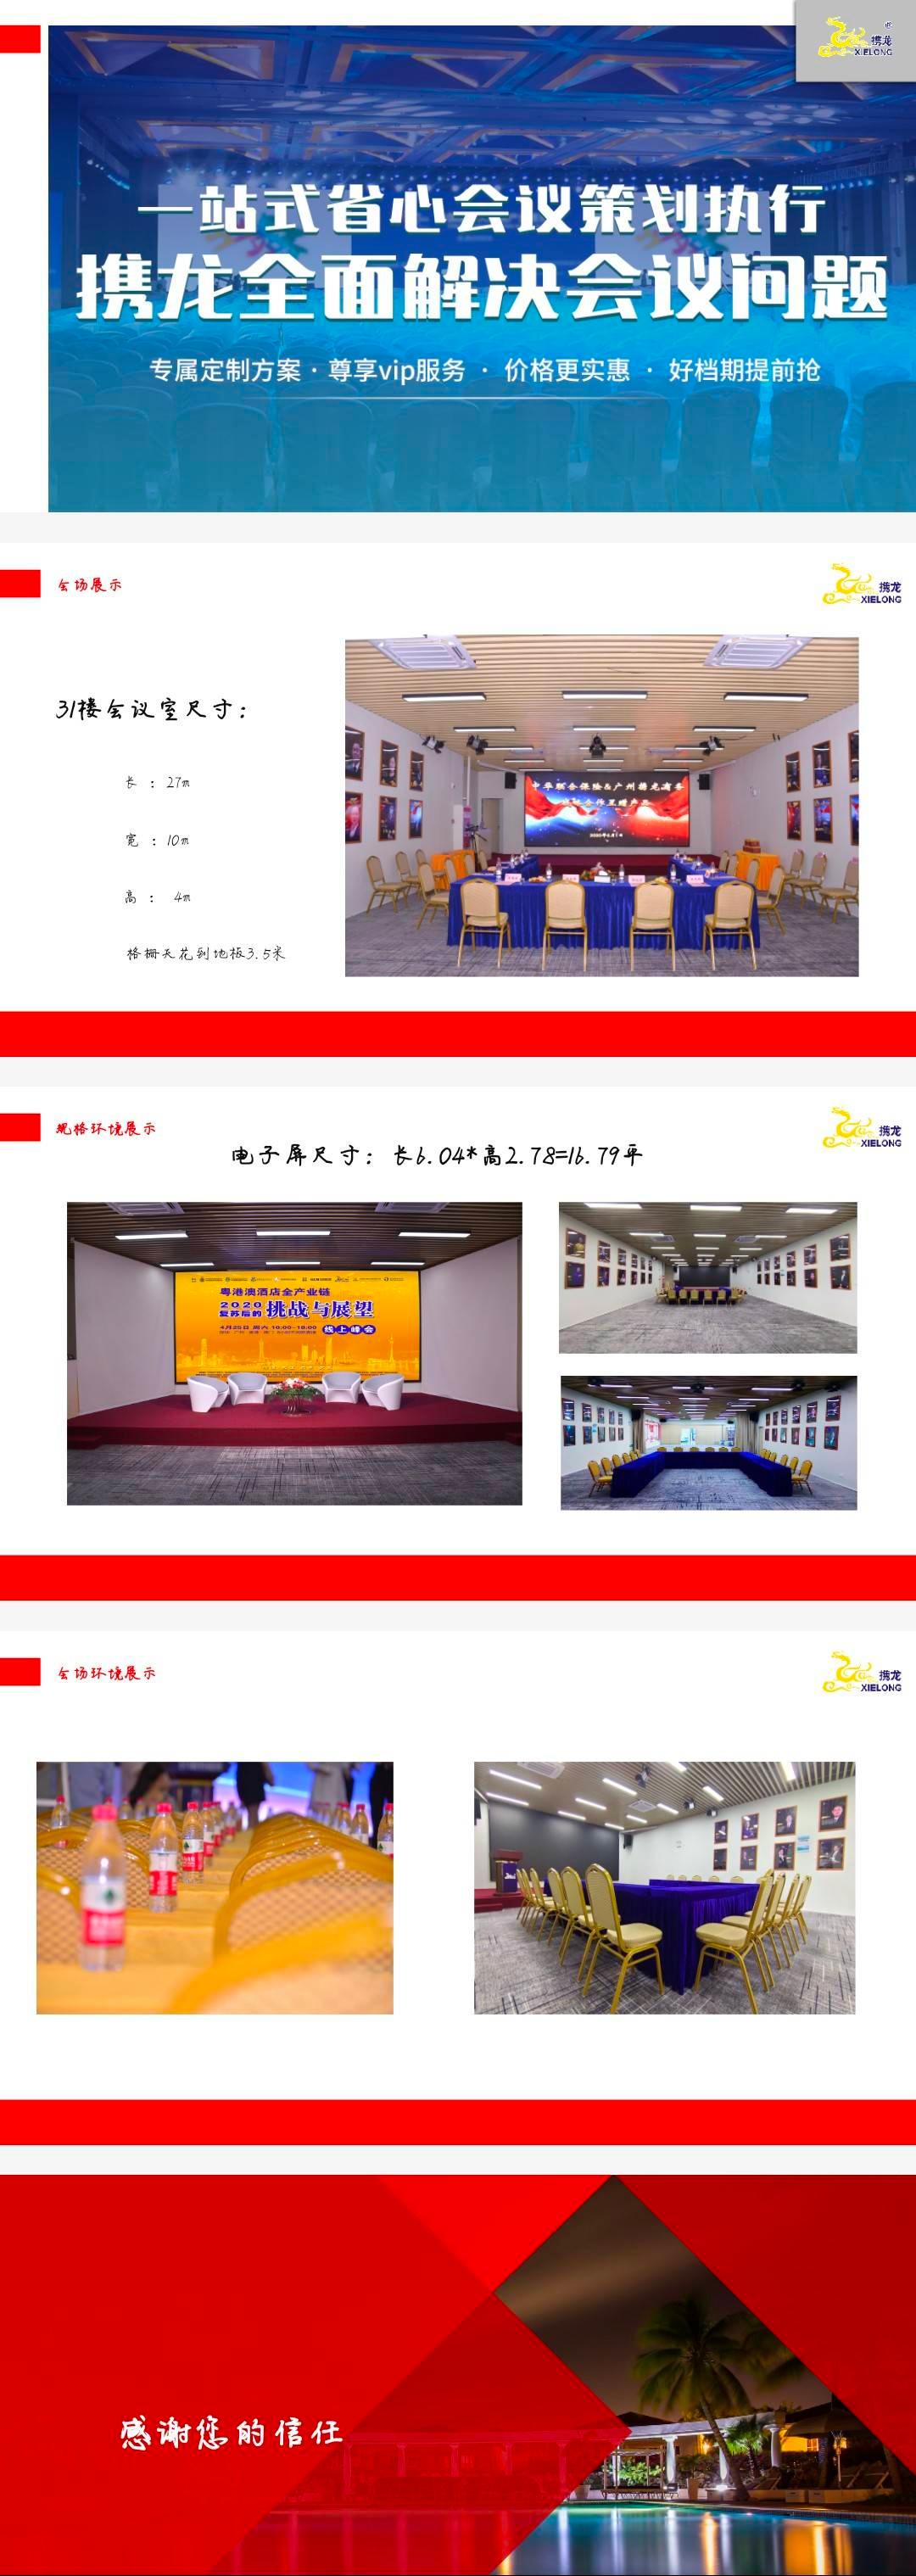 广州其他最大容纳300人的会议场地|广州市番禺区中铁·诺德中心31F会议室的价格与联系方式